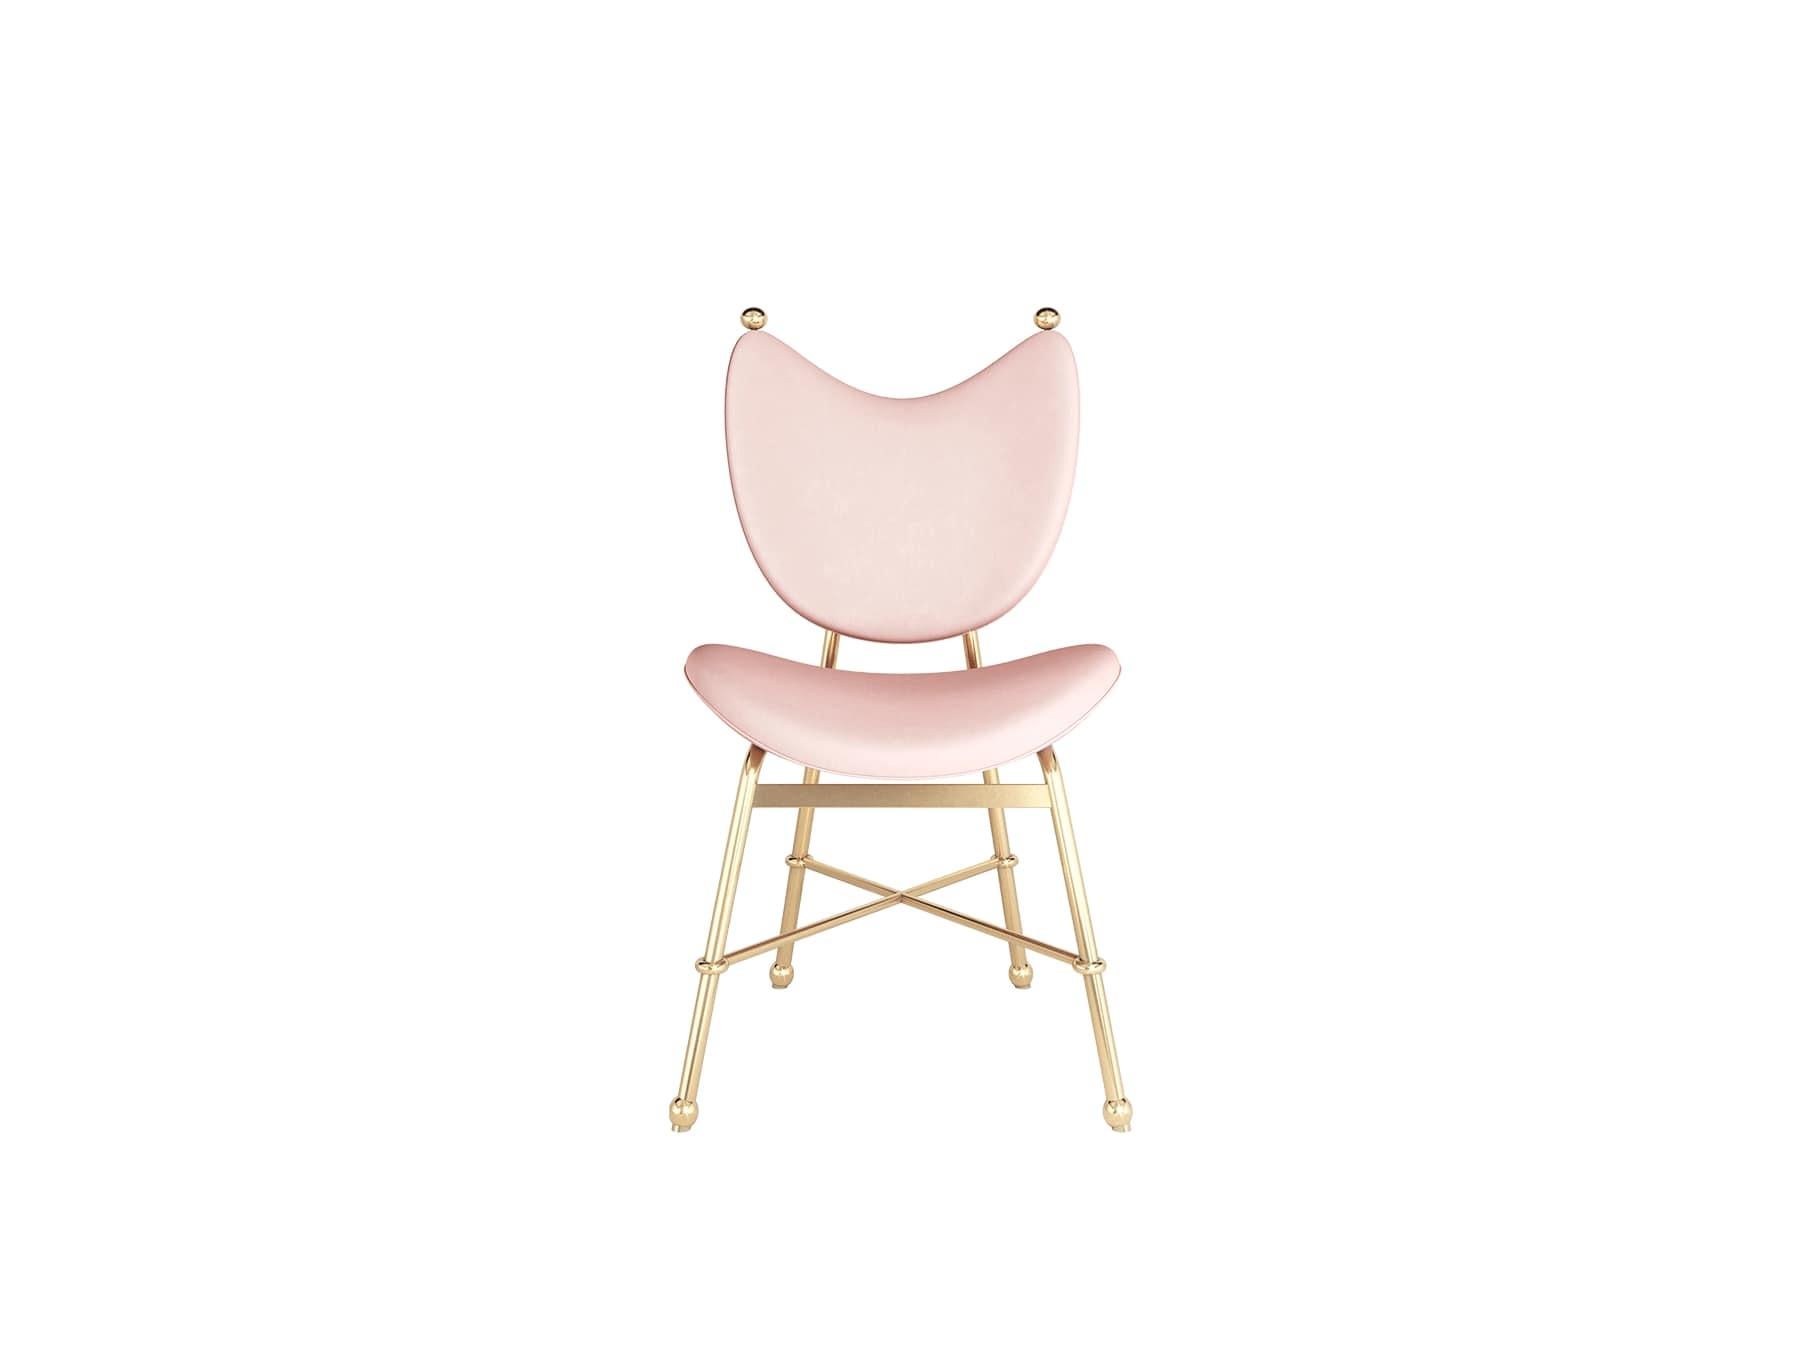 La chaise de salle à manger Samira est sophistiquée et a la forme d'une chaise. Cette chaise de salle à manger moderne est rembourrée s'accorde à merveille avec toute table de salle à manger contemporaine ou de luxe.

MATERIAL : Tapis en velours ;